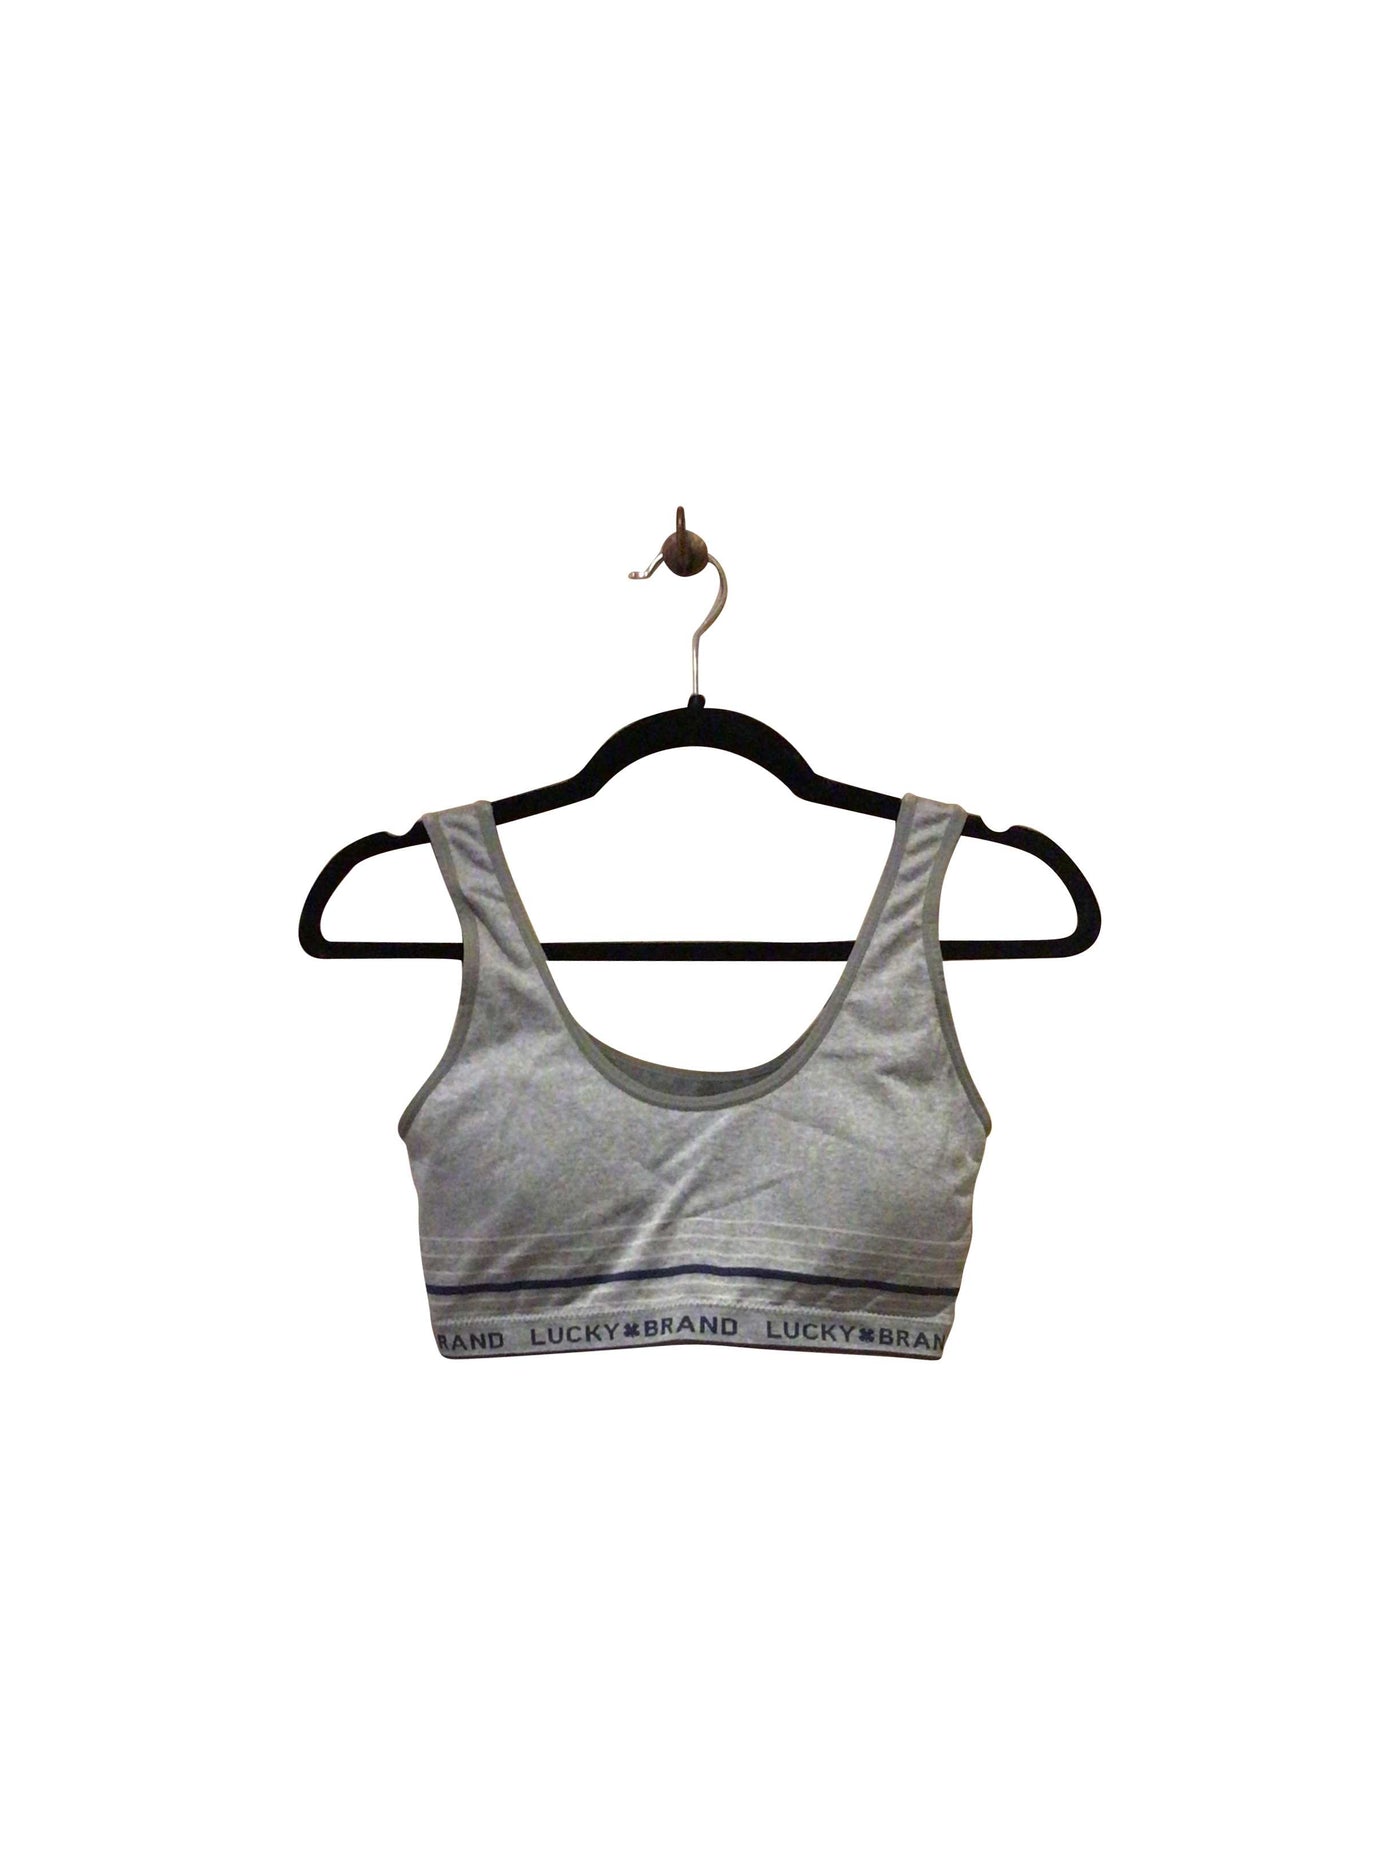 LUCKY BRAND Activewear Sport bra in Gray  -  S  16.19 Koop